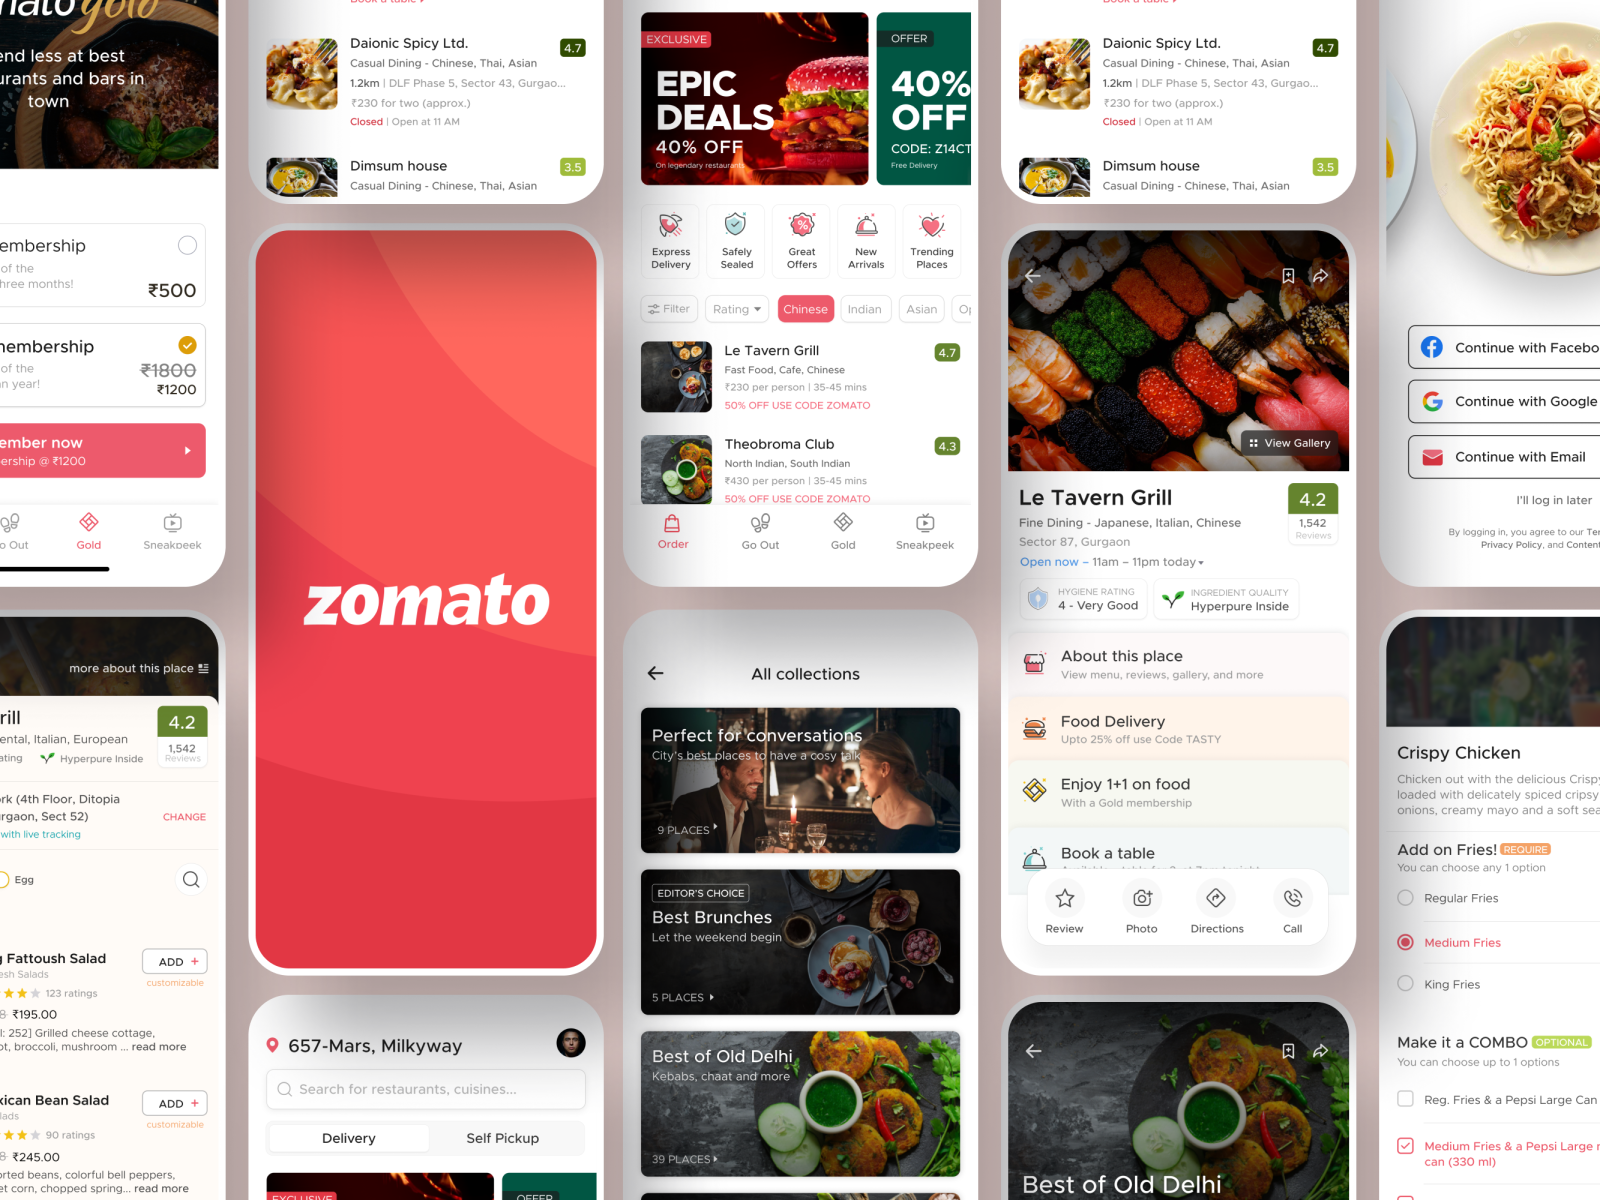 Zomato app by vijay verma for Zomato on Dribbble